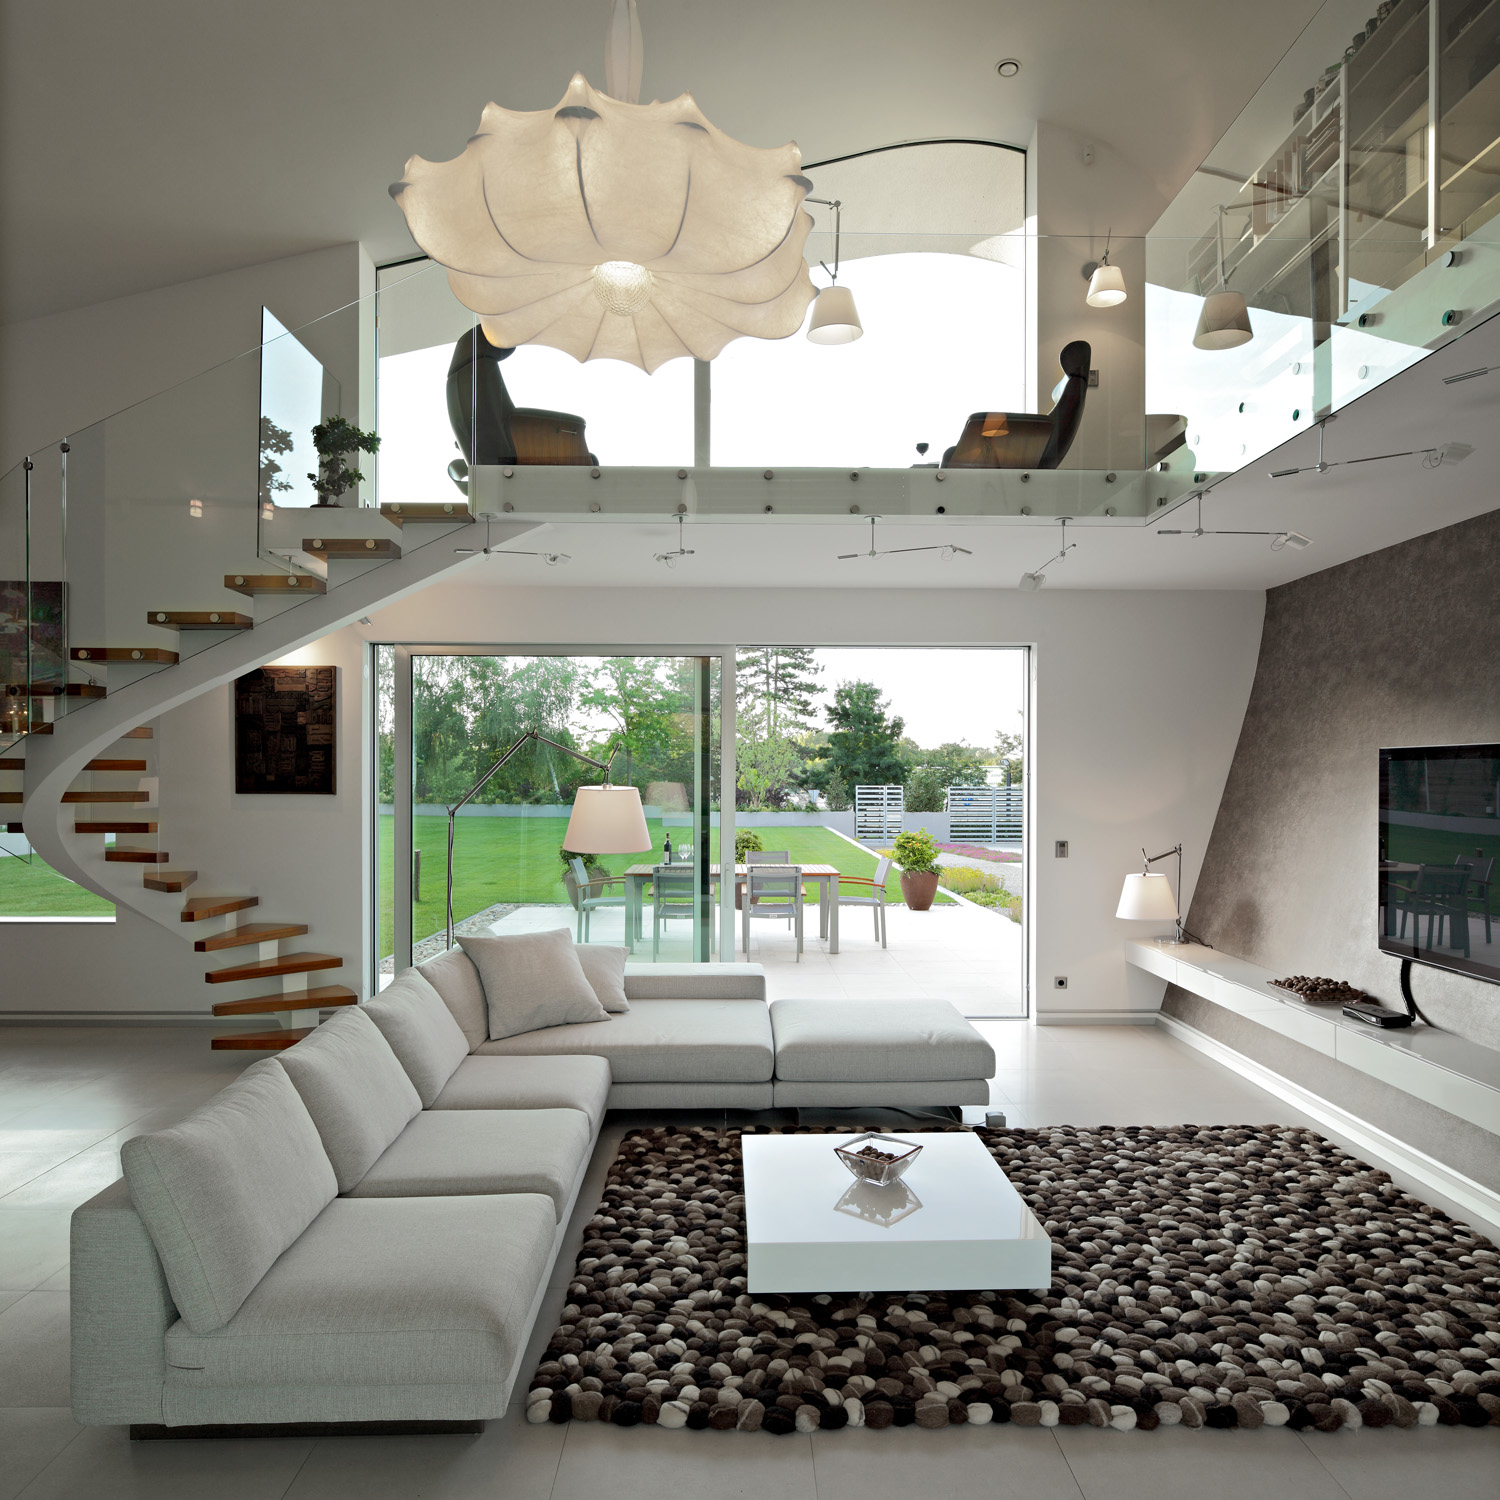 Красивый дизайн интерьера дома фото